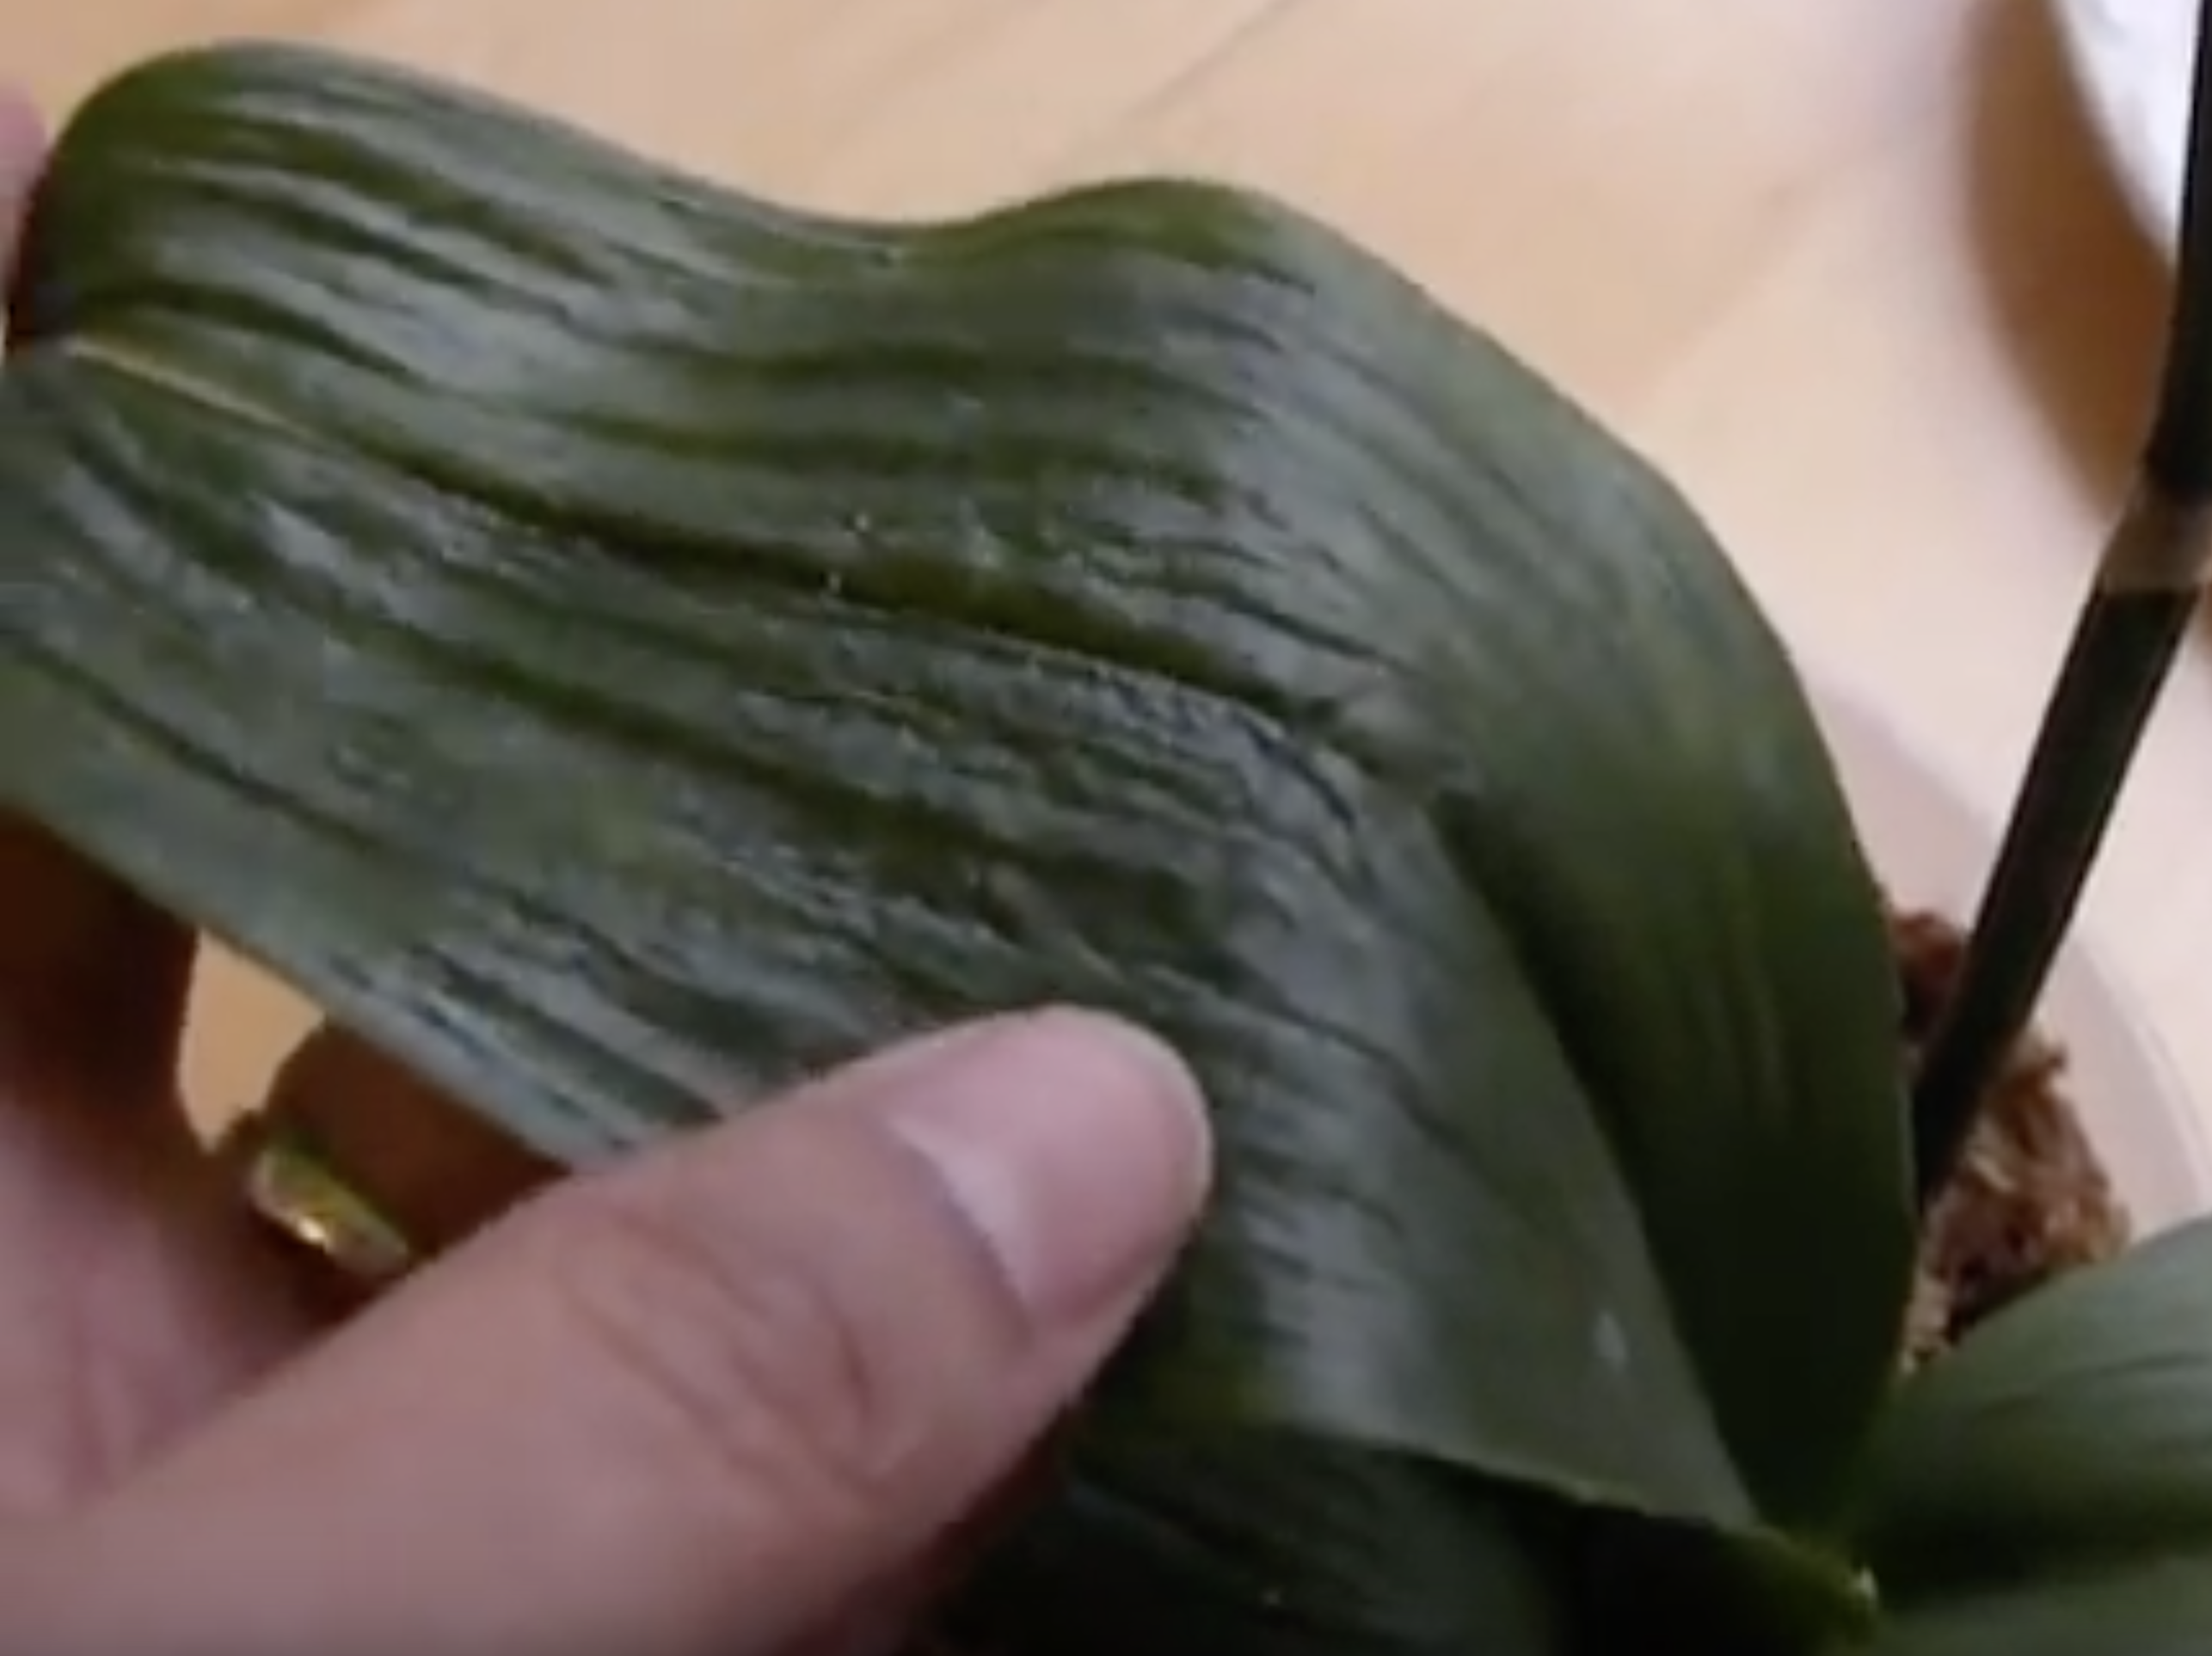  Varför är min orkidés blad slaka och skrynkliga? Och hur åtgärdar man det?